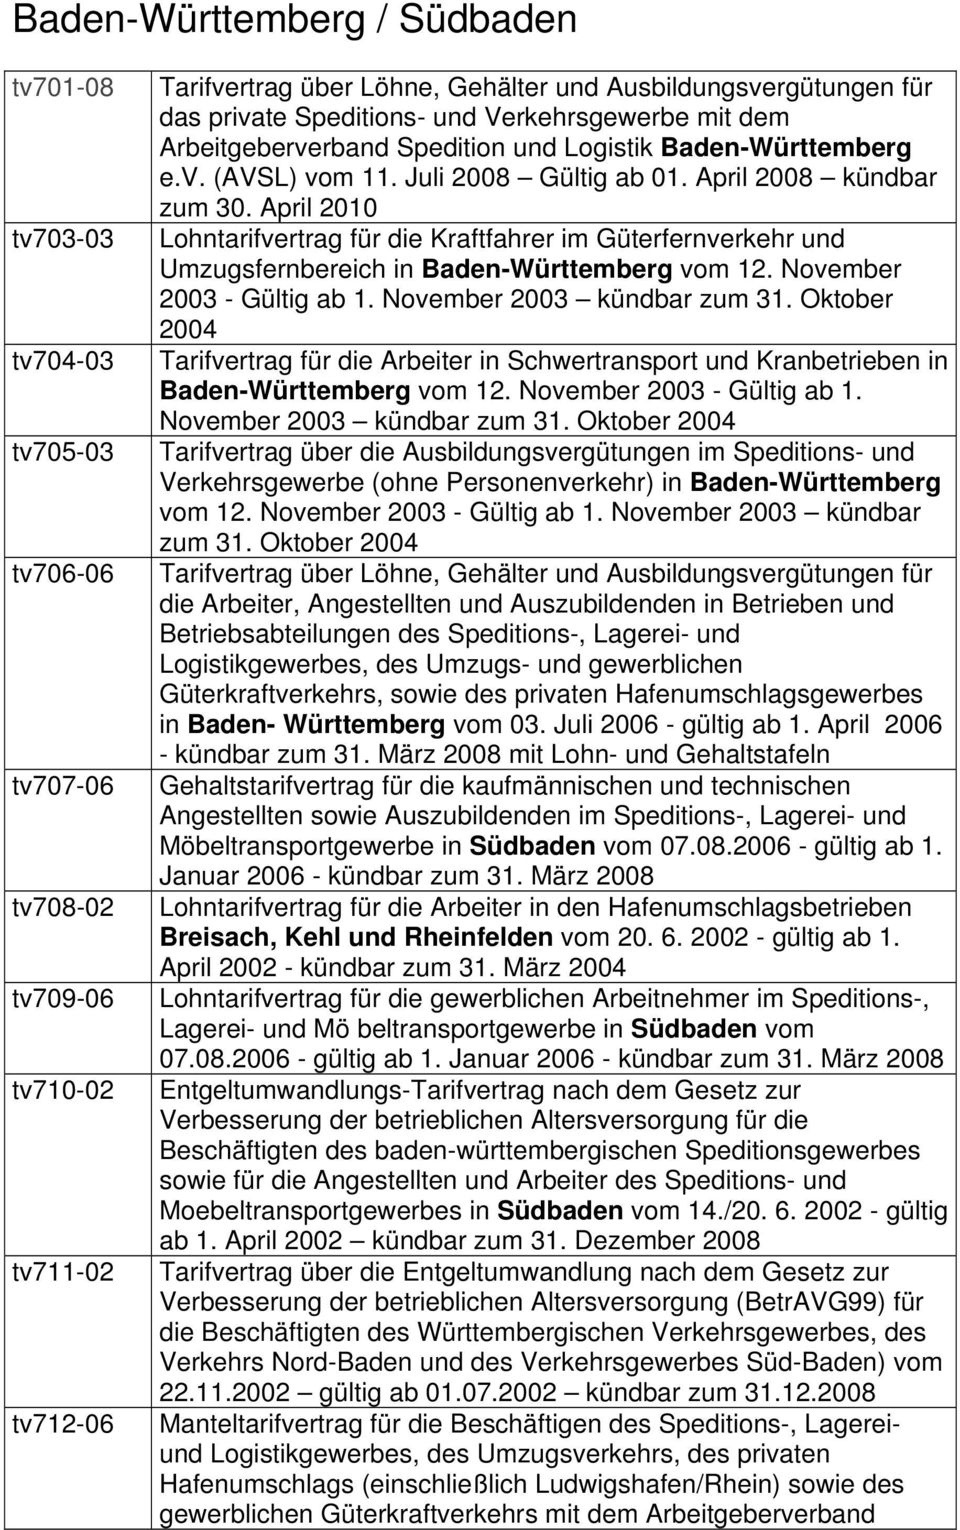 April 2010 Lohntarifvertrag für die Kraftfahrer im Güterfernverkehr und Umzugsfernbereich in Baden-Württemberg vom 12. November 2003 - Gültig ab 1. November 2003 kündbar zum 31.